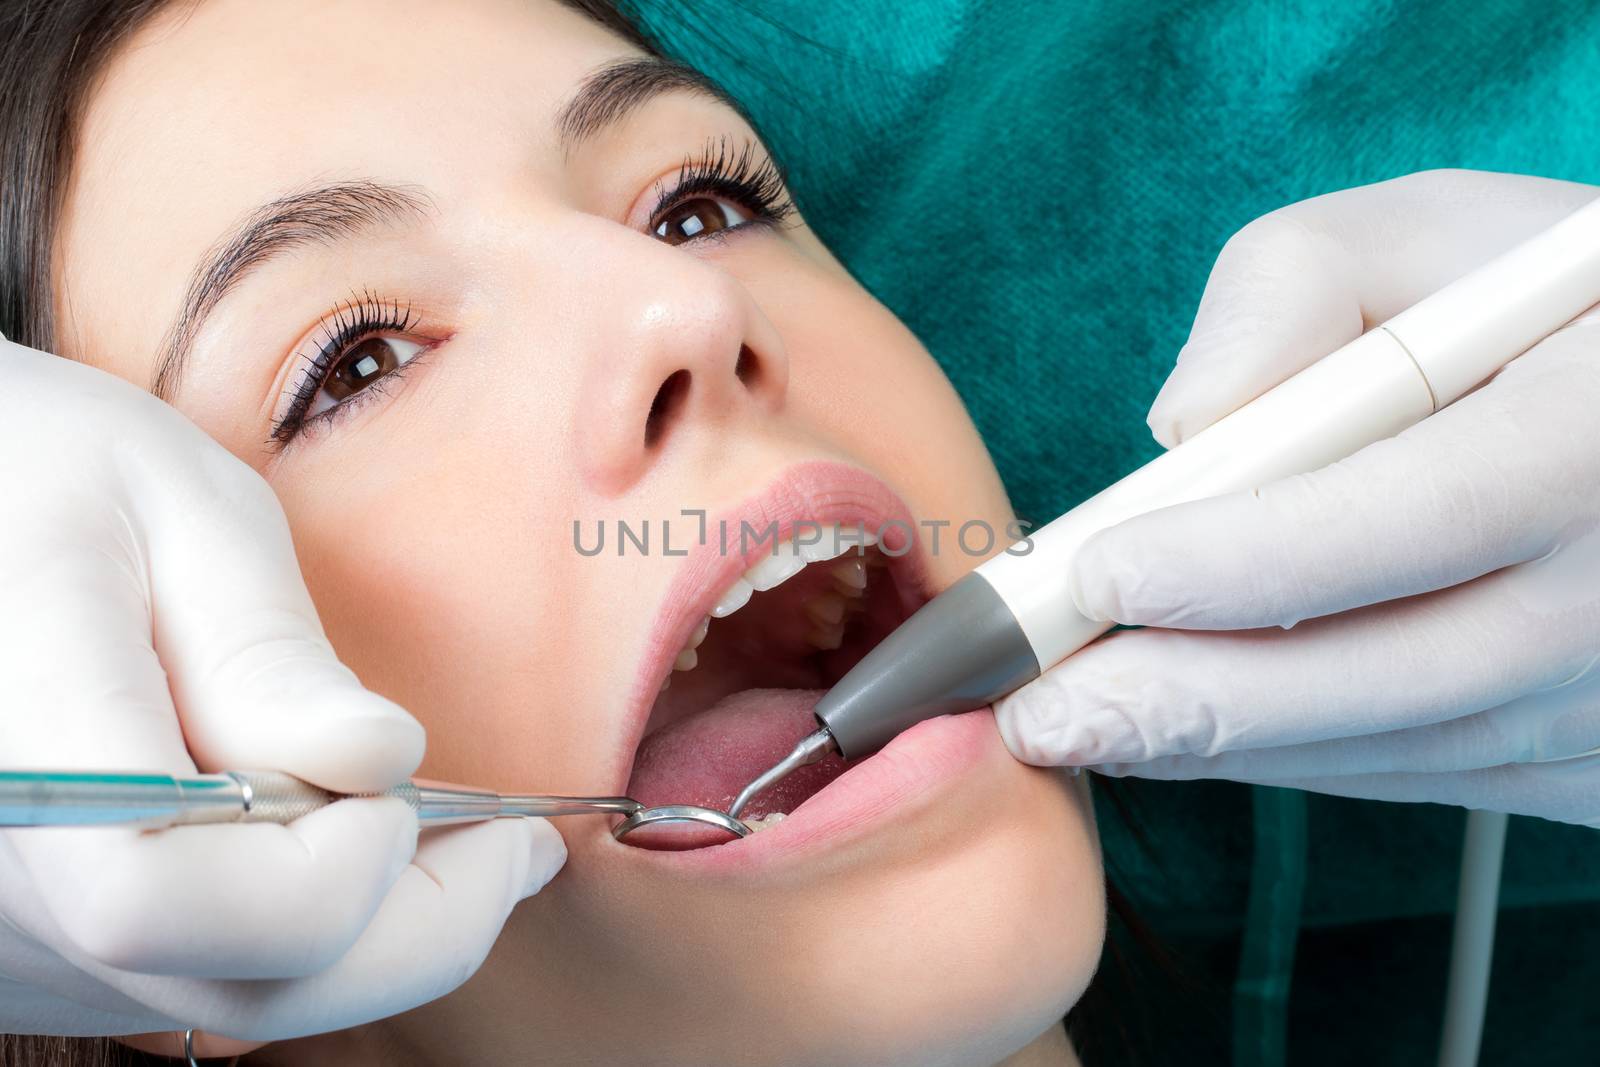 Dental hygienist cleaning girls teeth. by karelnoppe